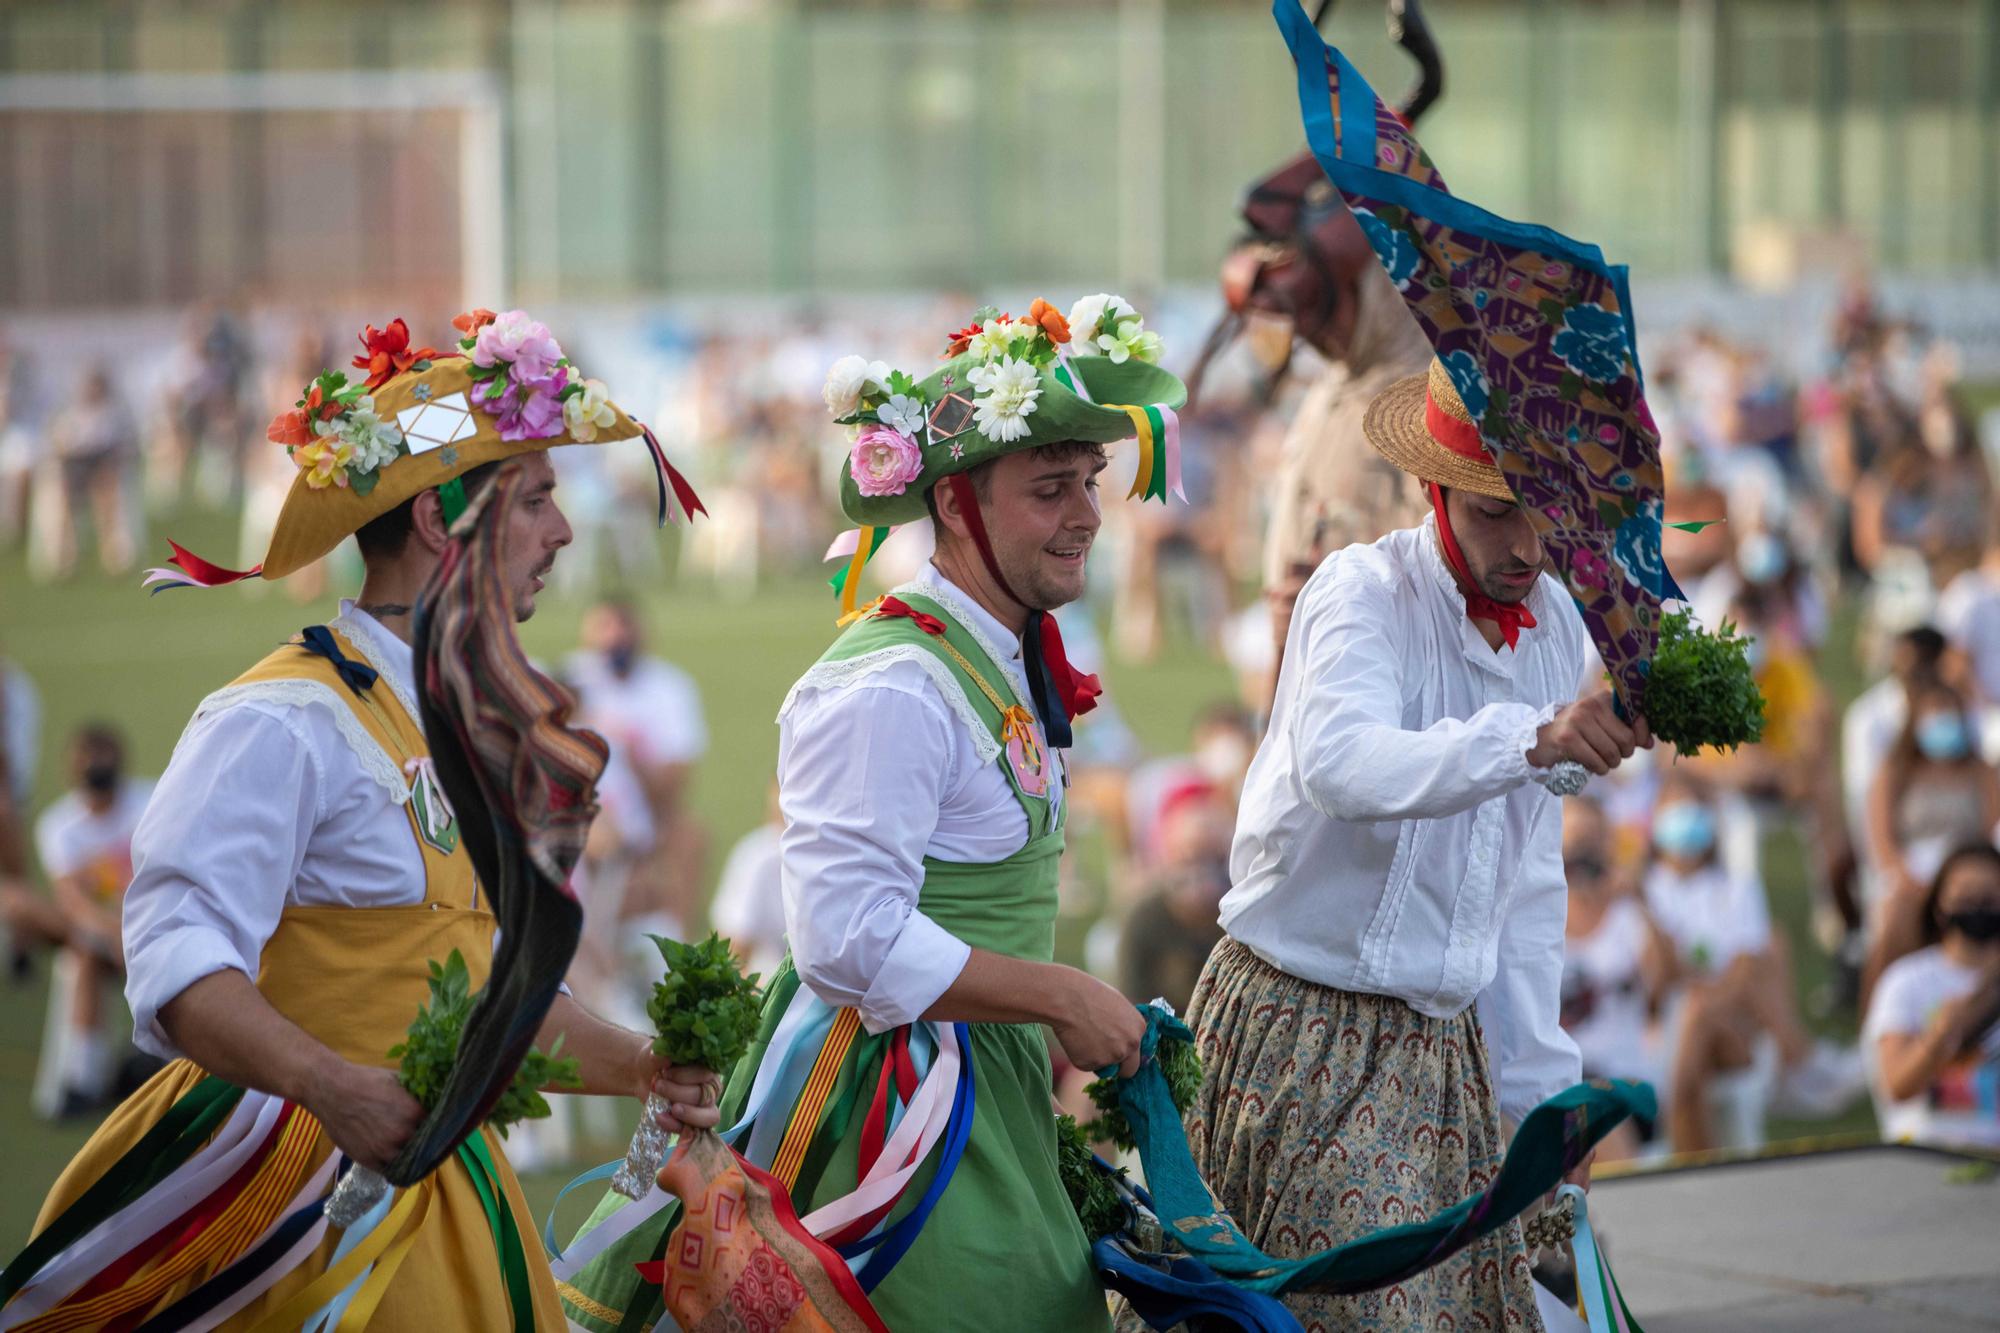 Los 'Cossiers' de Montuïri danzan con el lema: "Facem bulla, però amb seny"